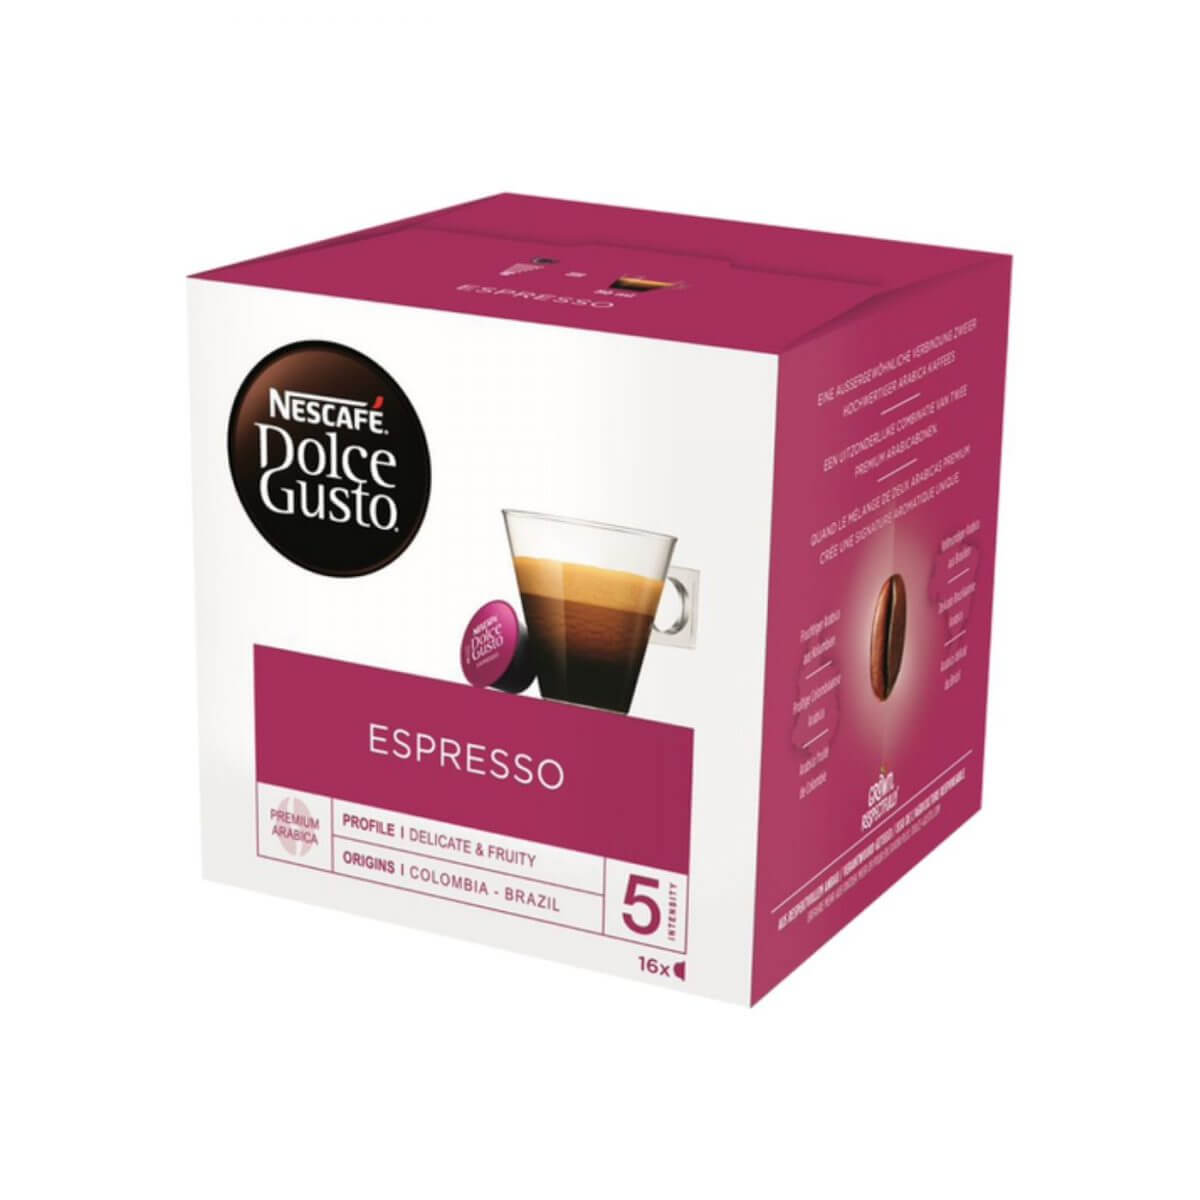 Nescafé - Dolce Gusto - Espresso - capsules